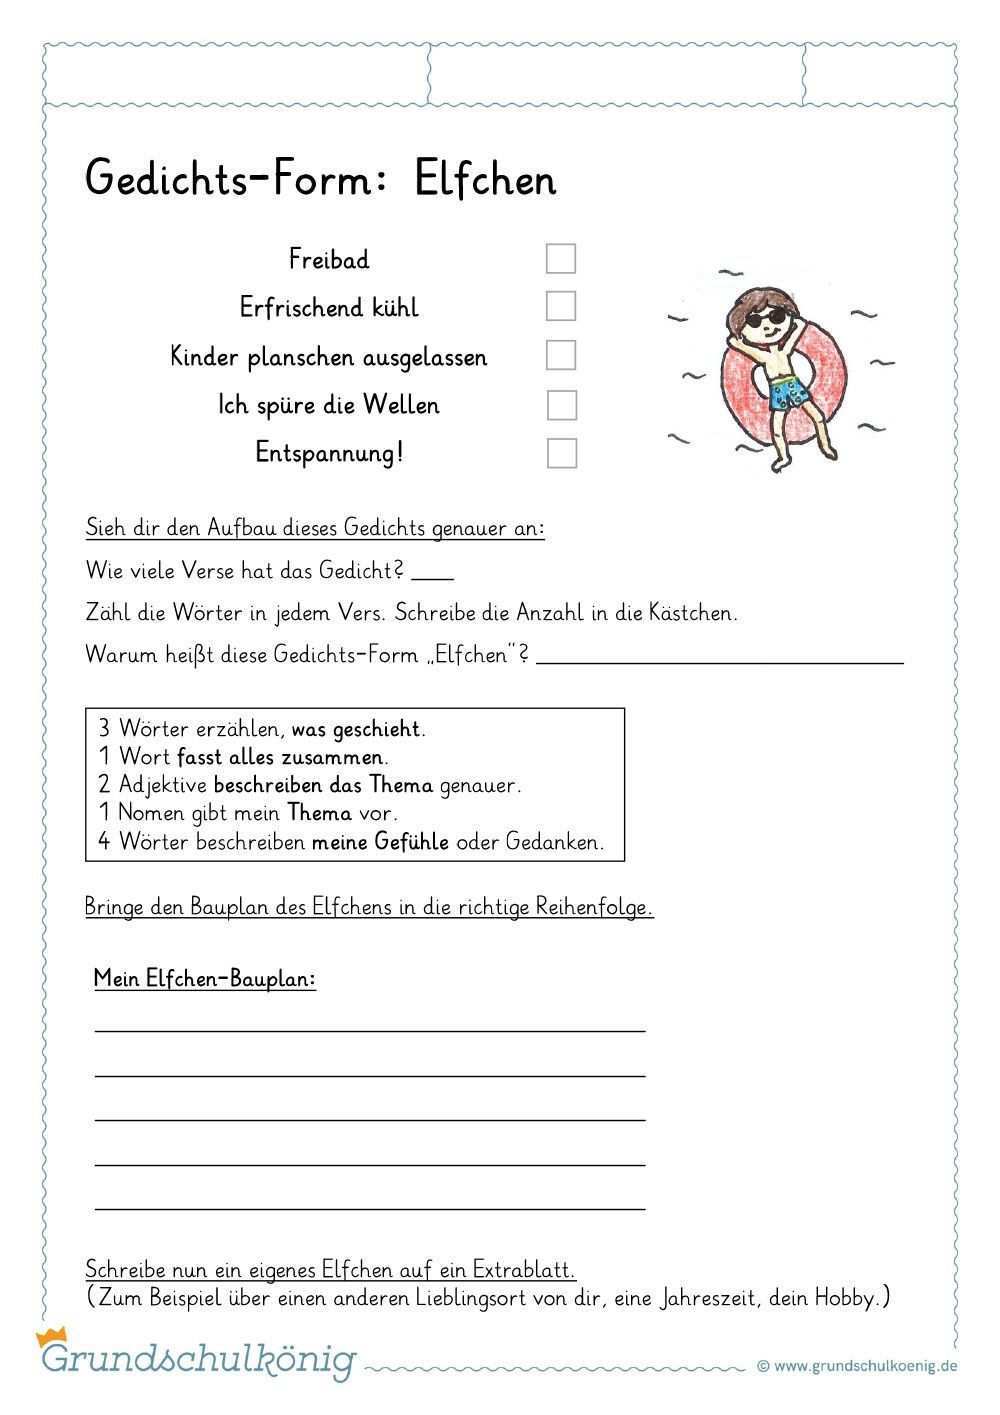 Deutsch Grundschule Gedichte Kunstunterricht Grundschule Deutsch Gedichte Grundschule Kunstunterricht In 2020 Learning Worksheets Worksheets Free Kindergarten Skills